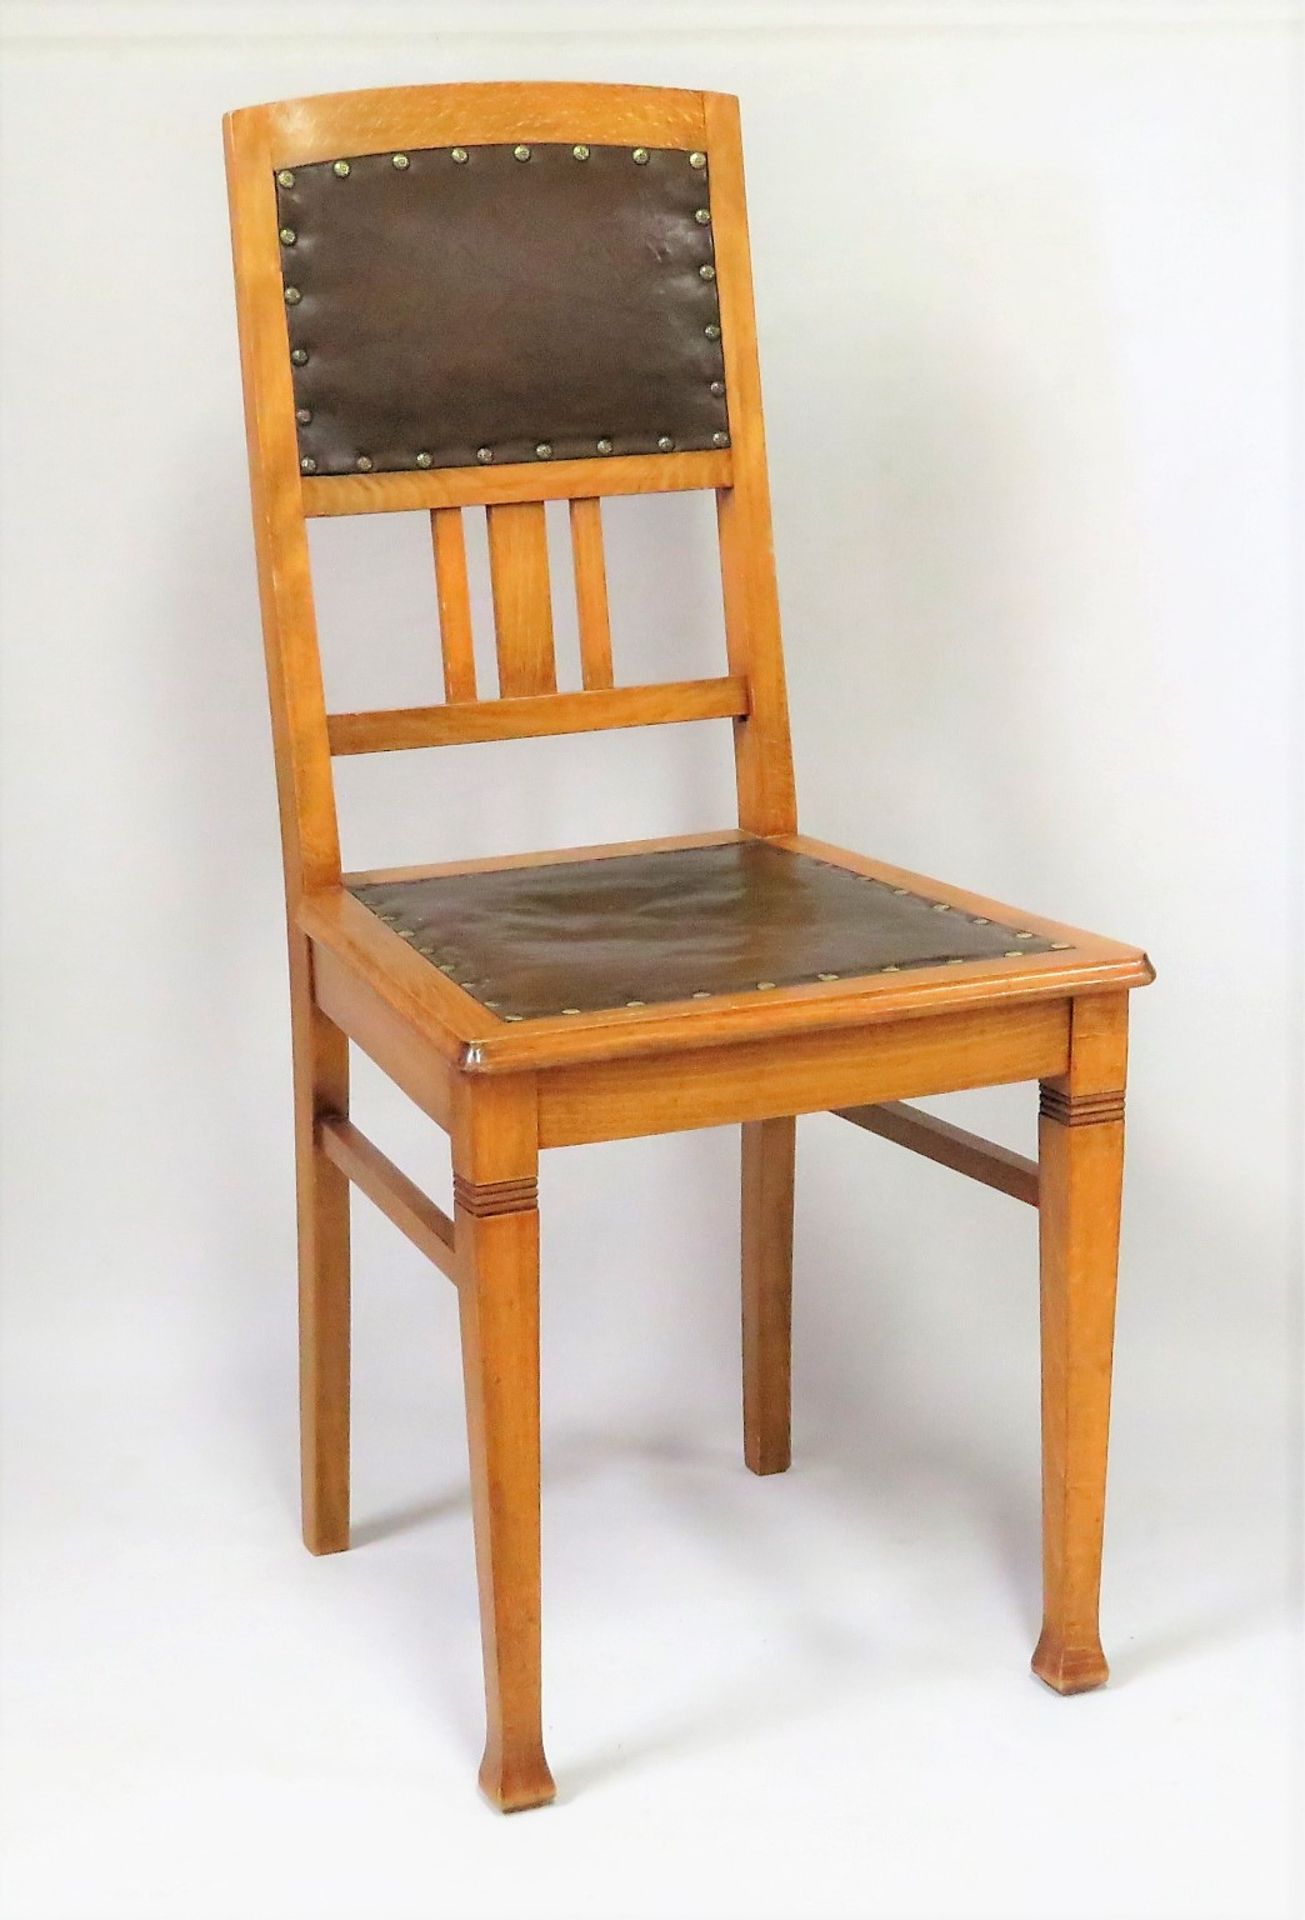 4 Stühle, Jugendstil, um 1900, Buche, 97 x 45 x 50 cm. - Bild 2 aus 2